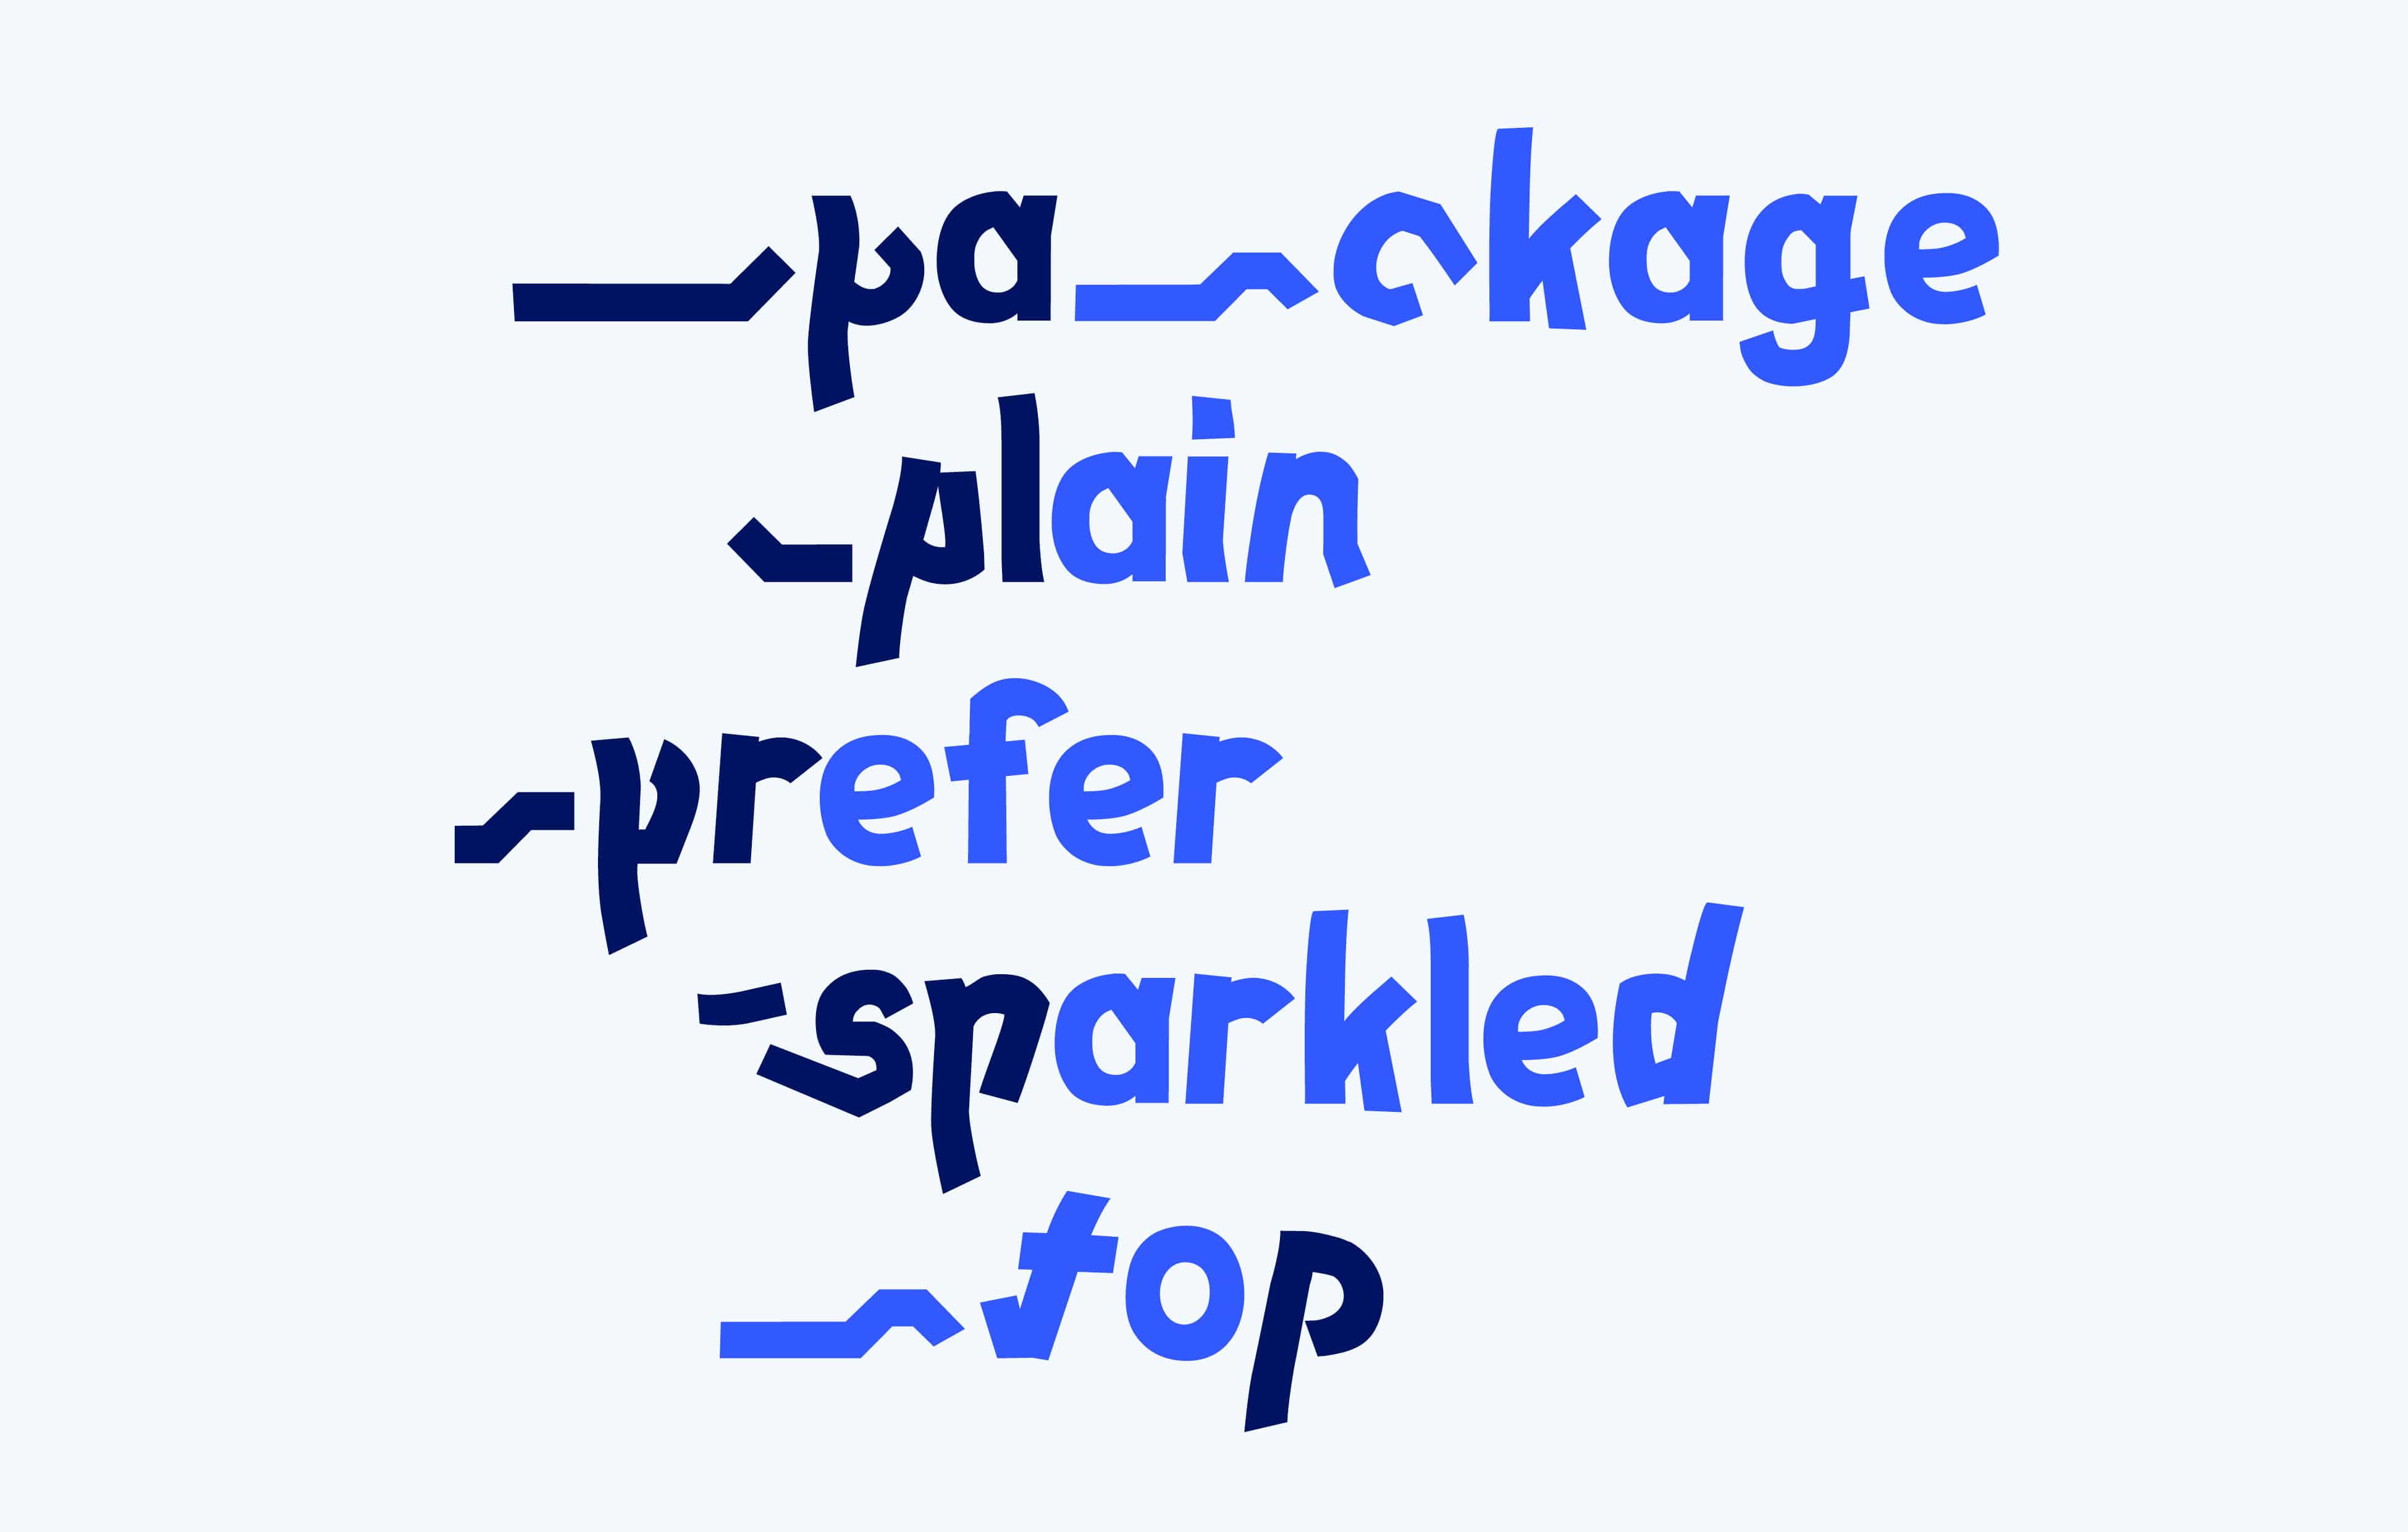 text mit verschiedenen wörtern, die das p visualisieren: package, plain, prefer, sprakeld, top